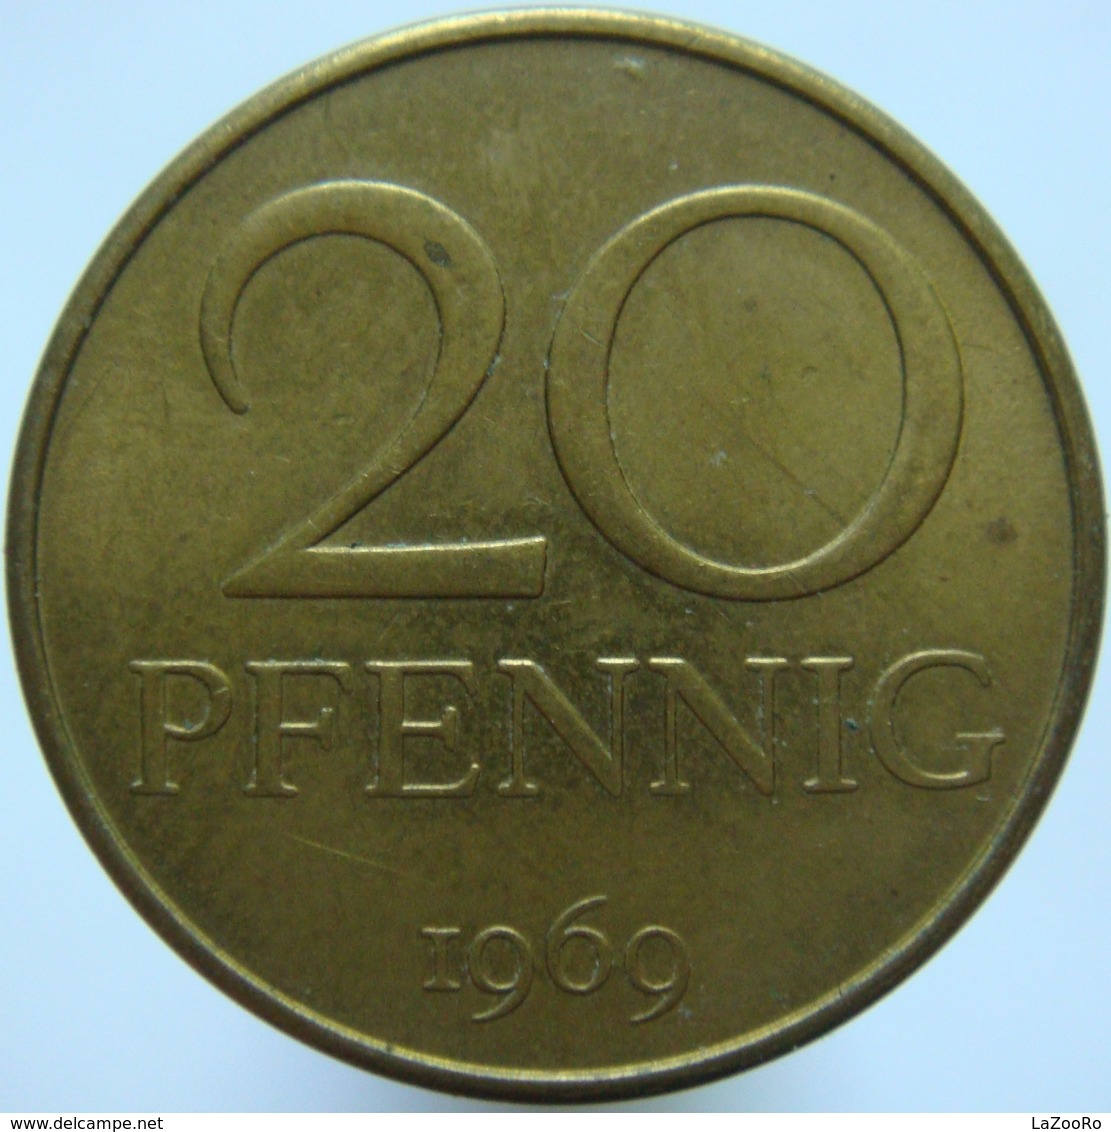 East Germany 20 Pfennig 1969 UNC - 20 Pfennig